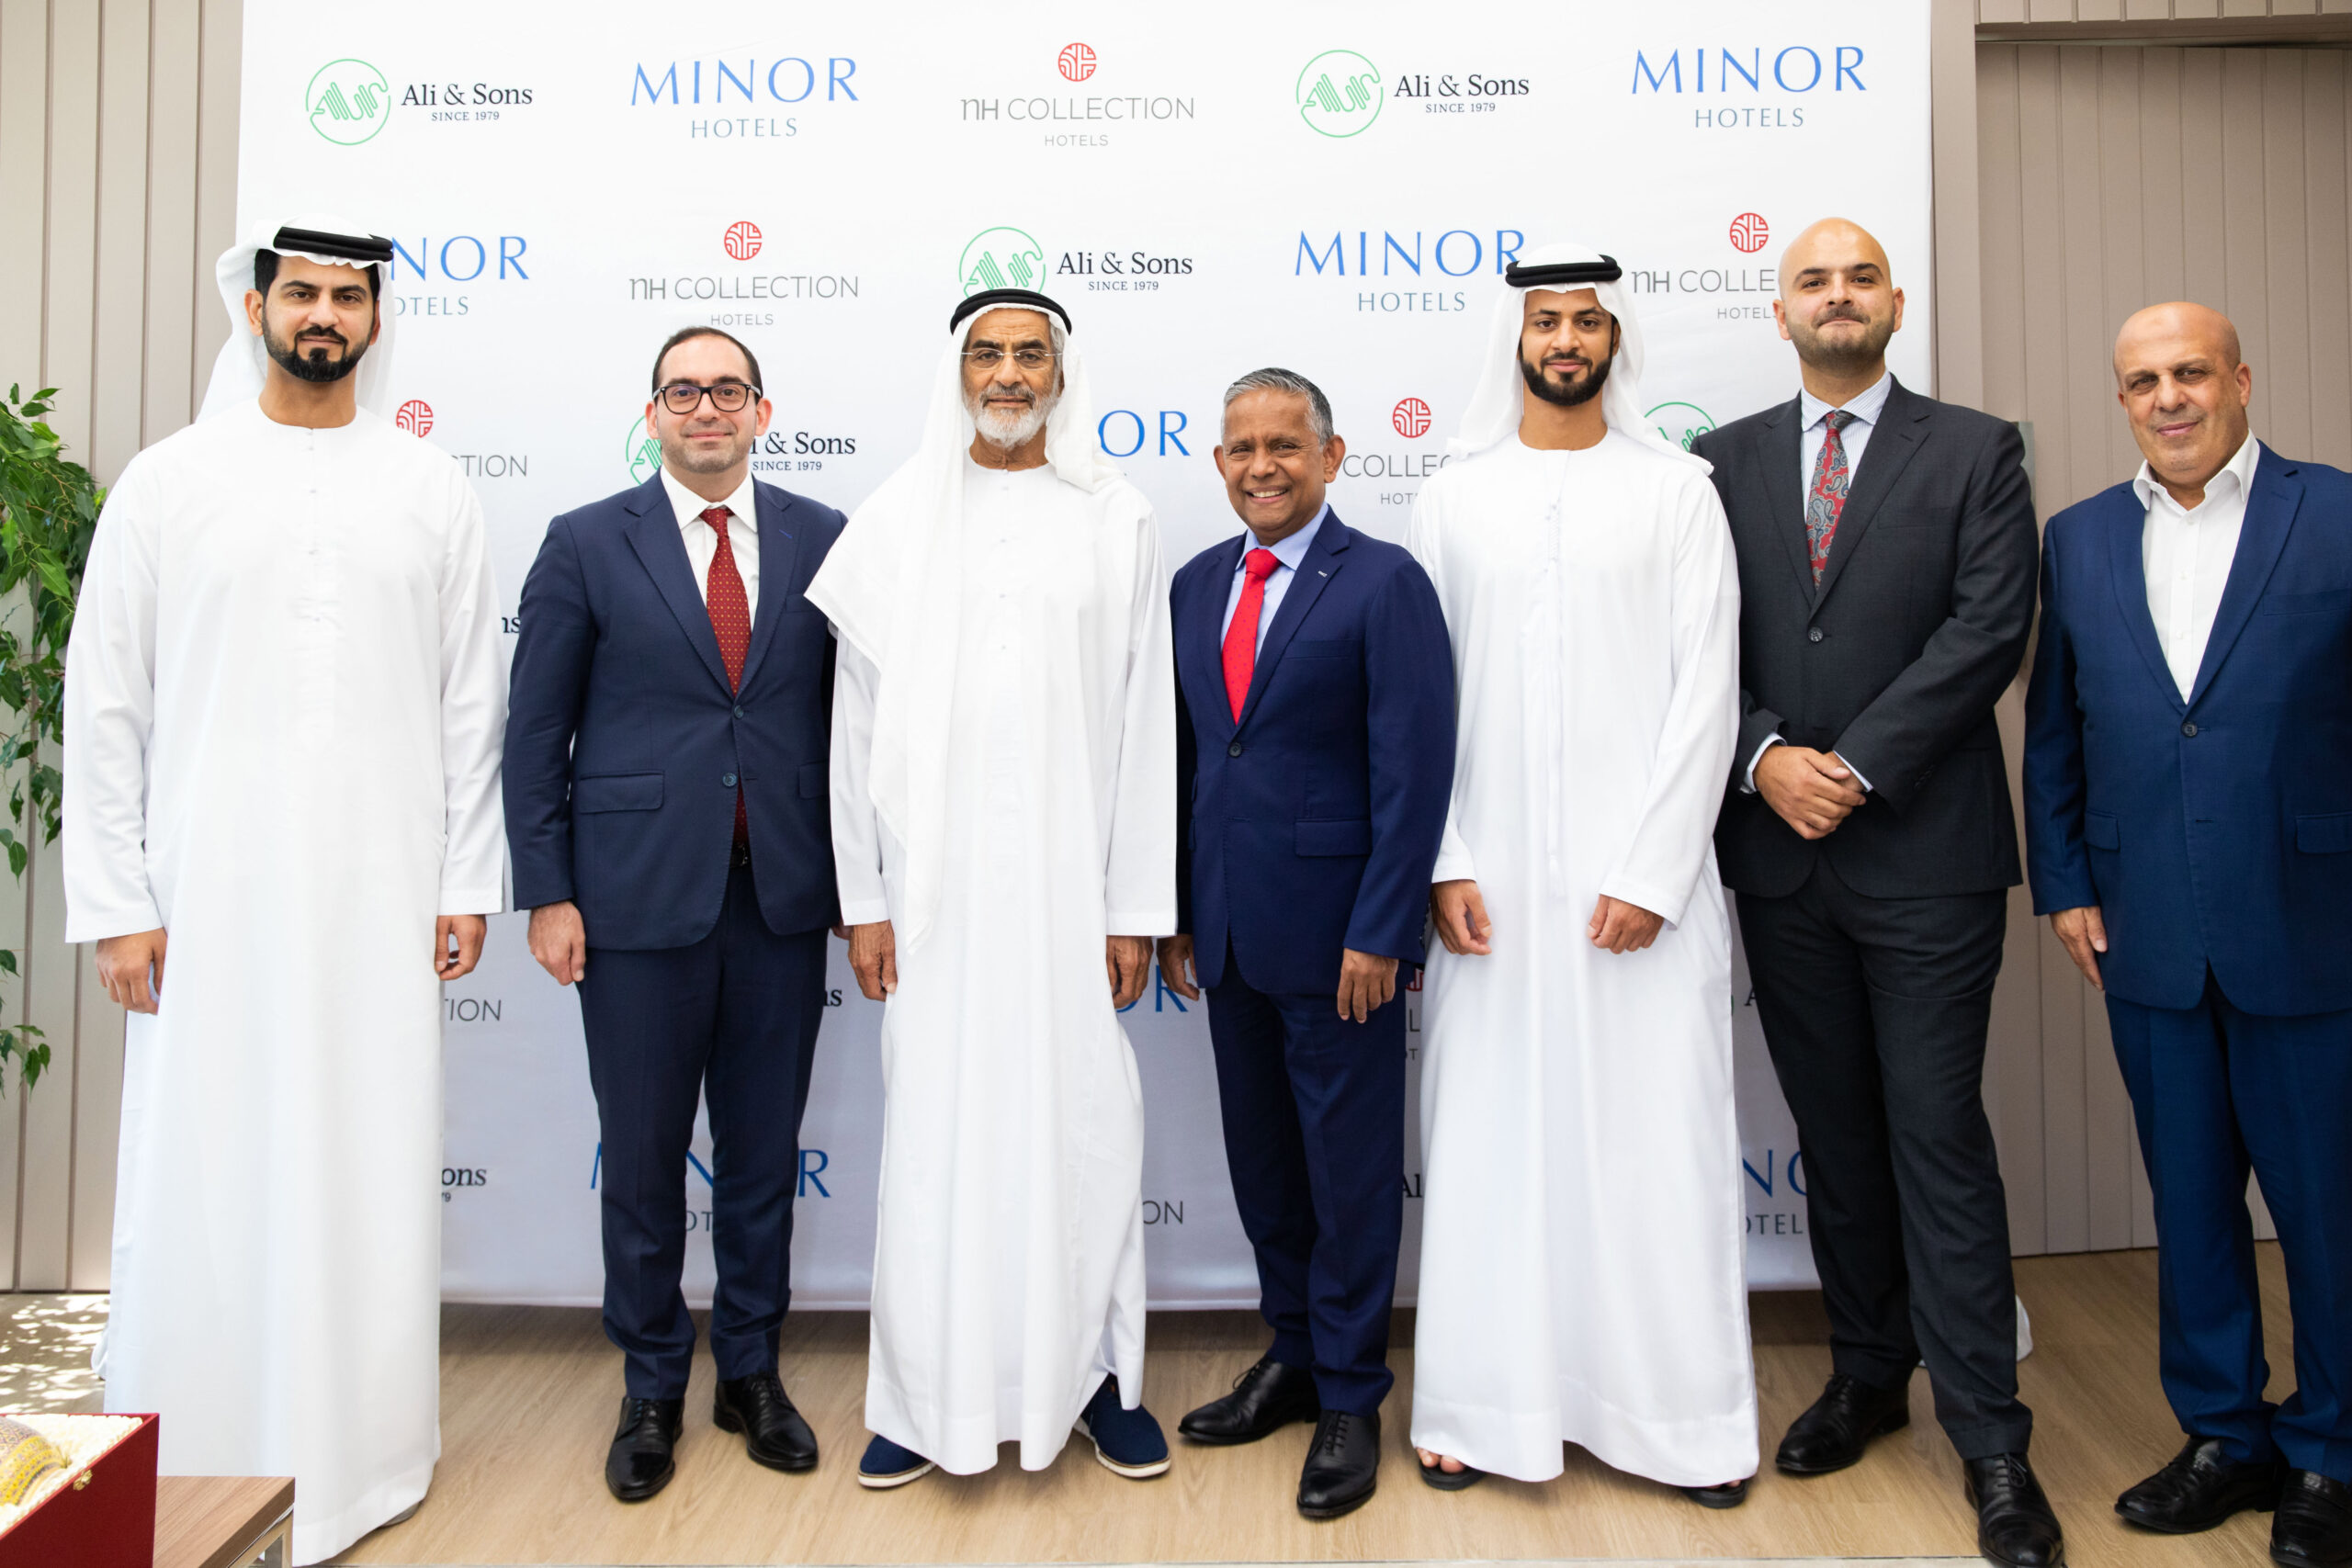 Minor Hotels Announces NH Collection La Suite Hotel, Dubai